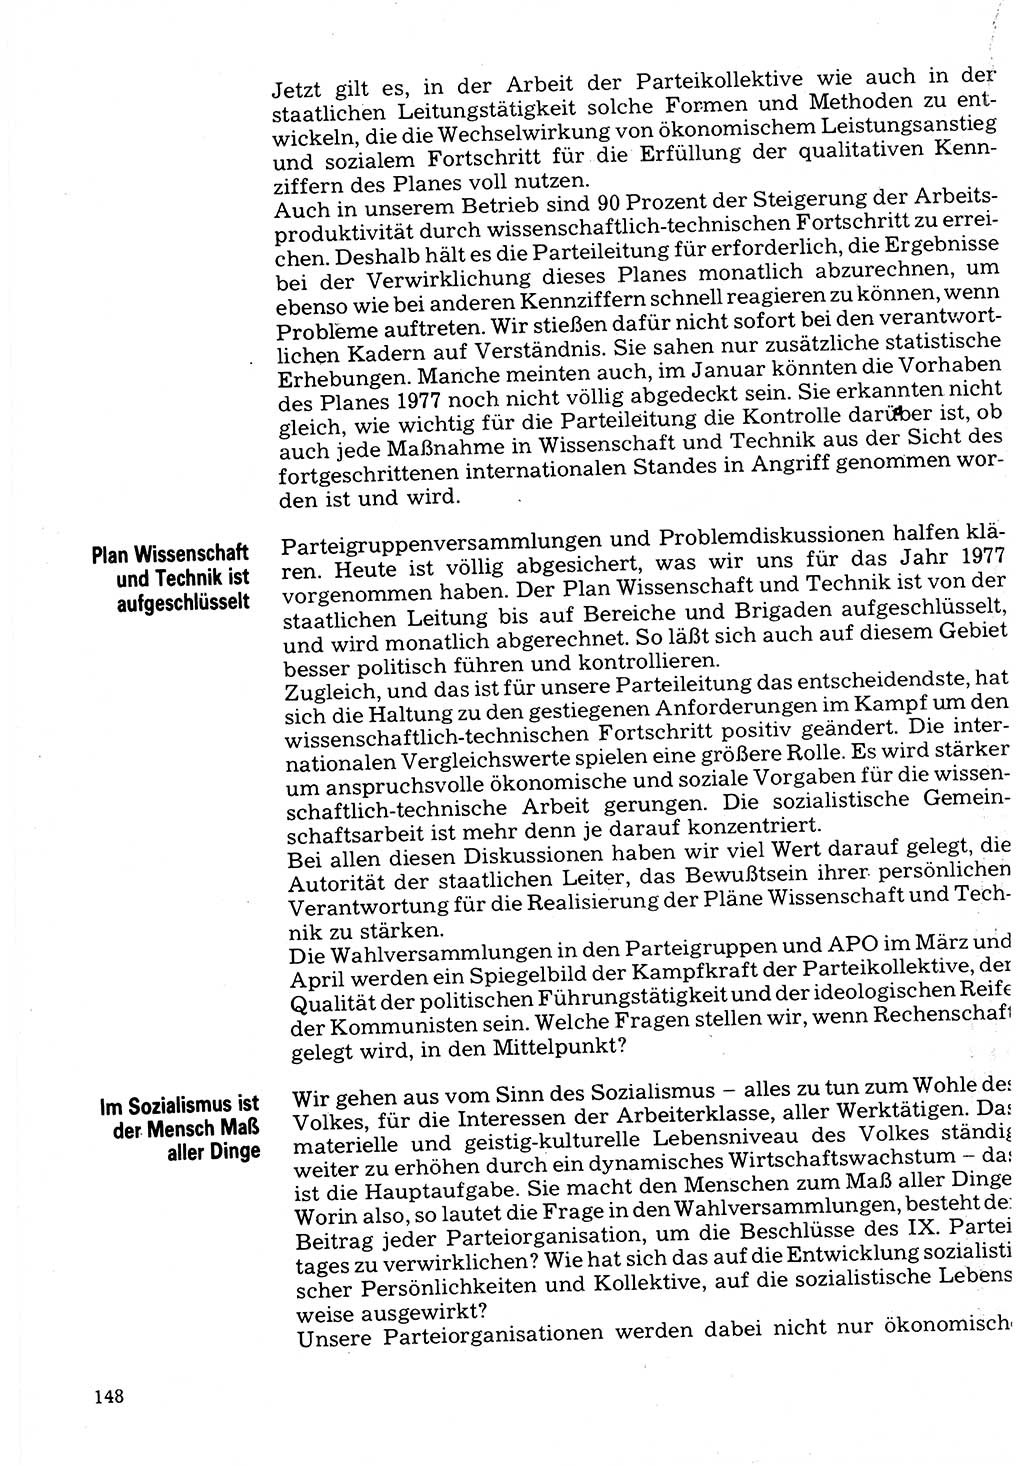 Neuer Weg (NW), Organ des Zentralkomitees (ZK) der SED (Sozialistische Einheitspartei Deutschlands) für Fragen des Parteilebens, 32. Jahrgang [Deutsche Demokratische Republik (DDR)] 1977, Seite 148 (NW ZK SED DDR 1977, S. 148)